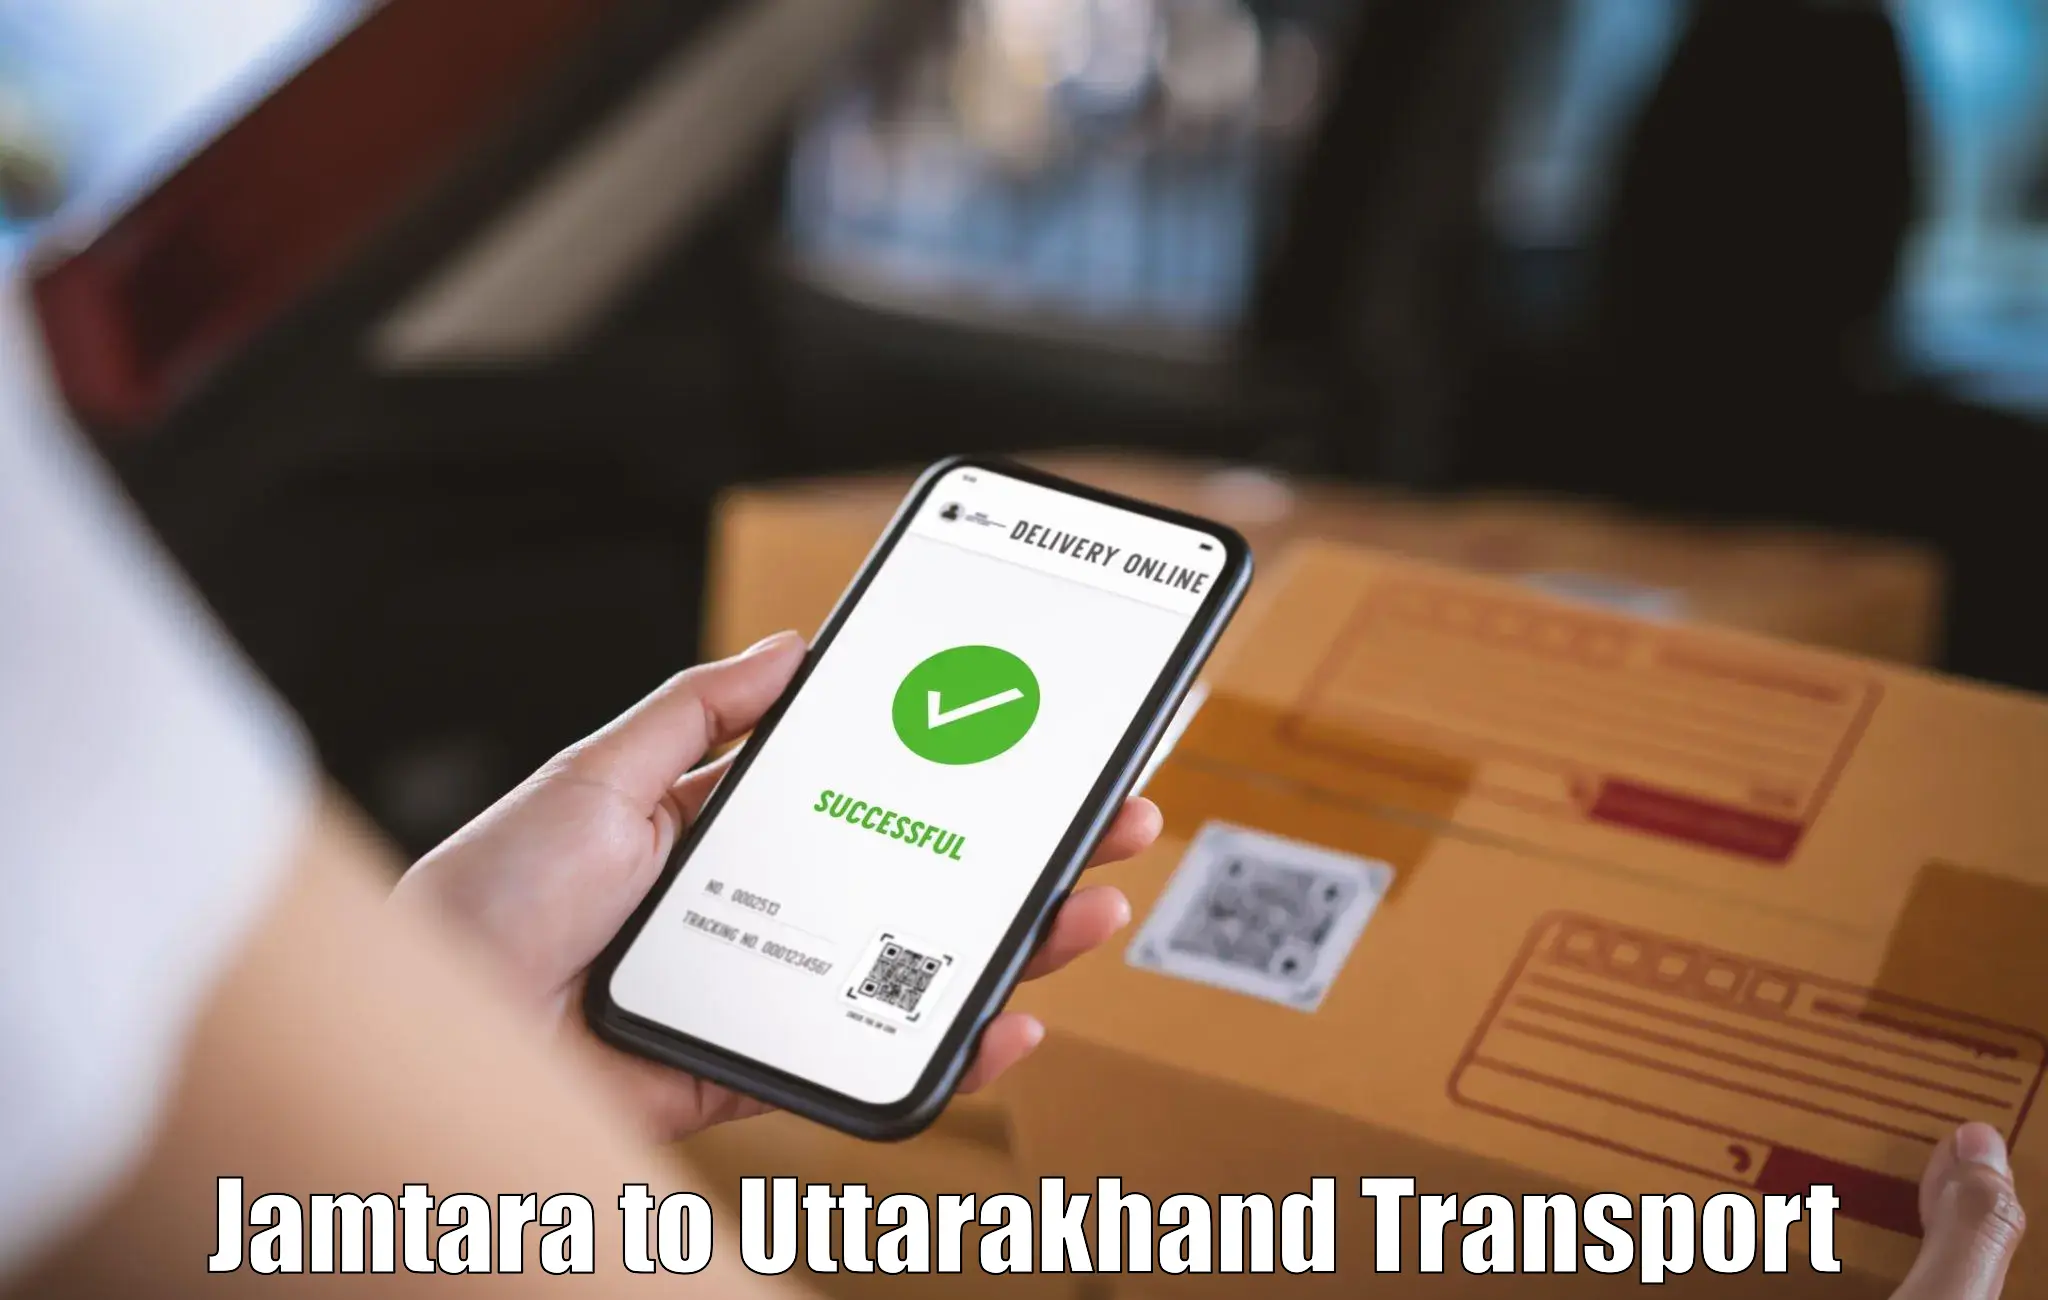 Material transport services Jamtara to Uttarakhand